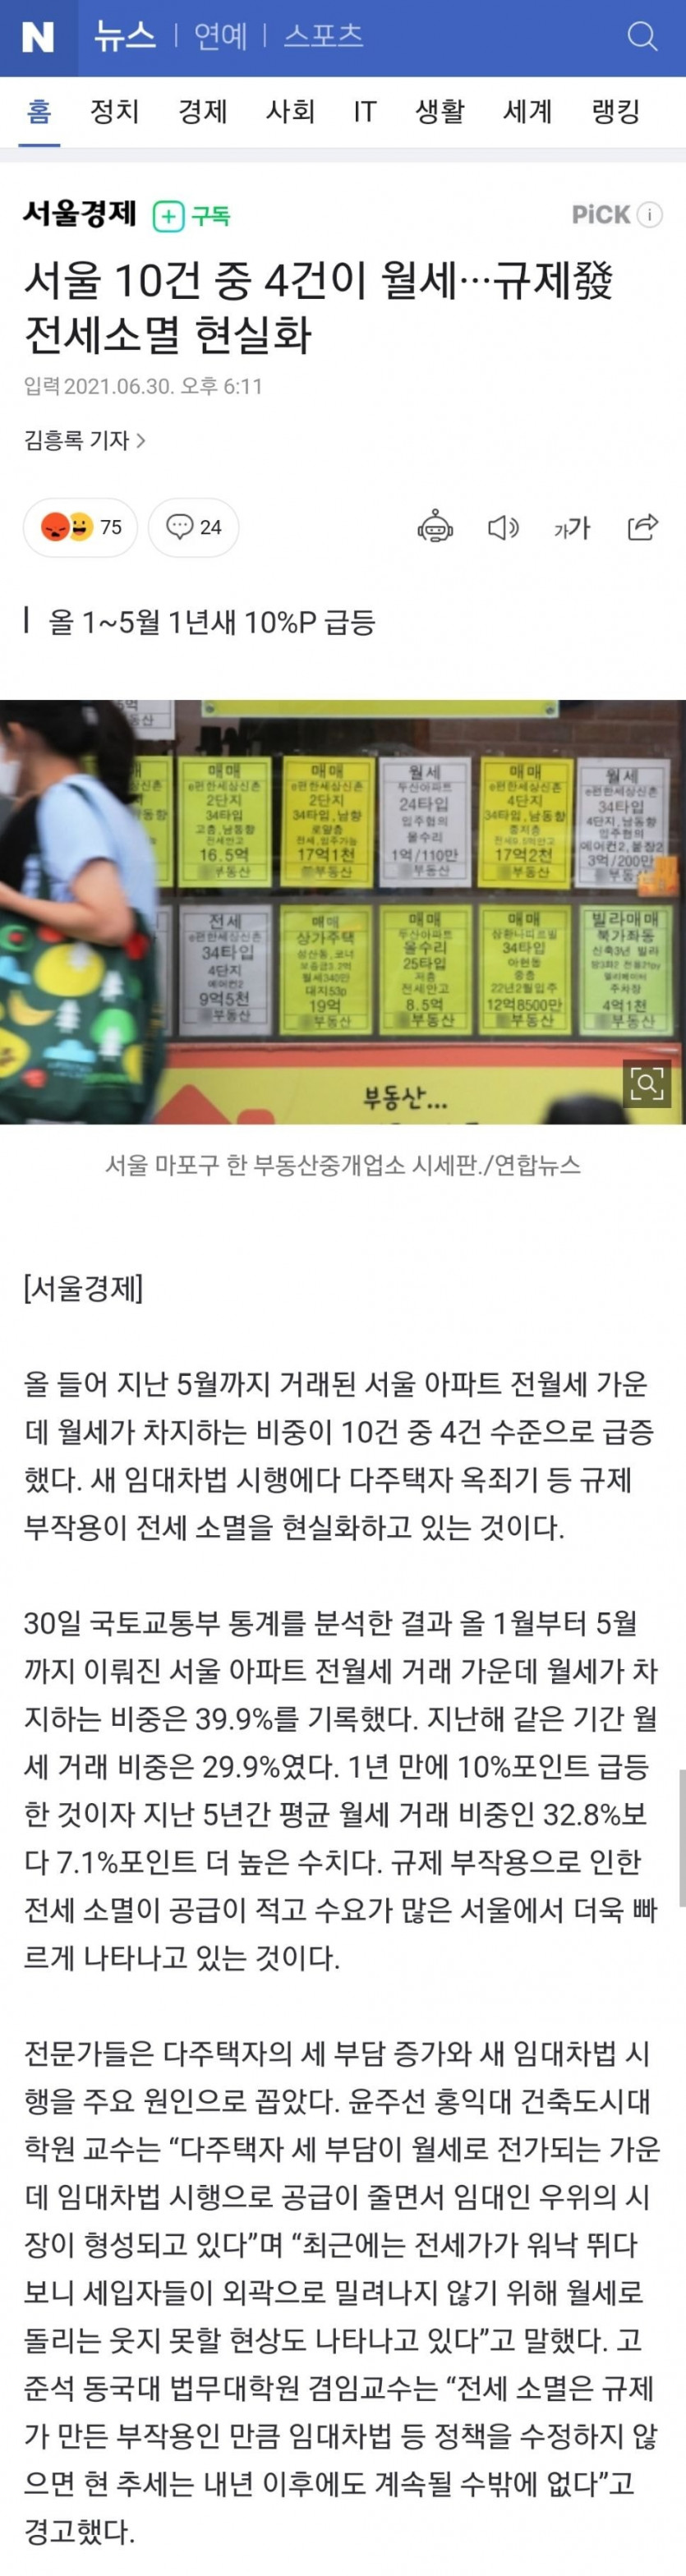 서울 월세비중 40% 육박